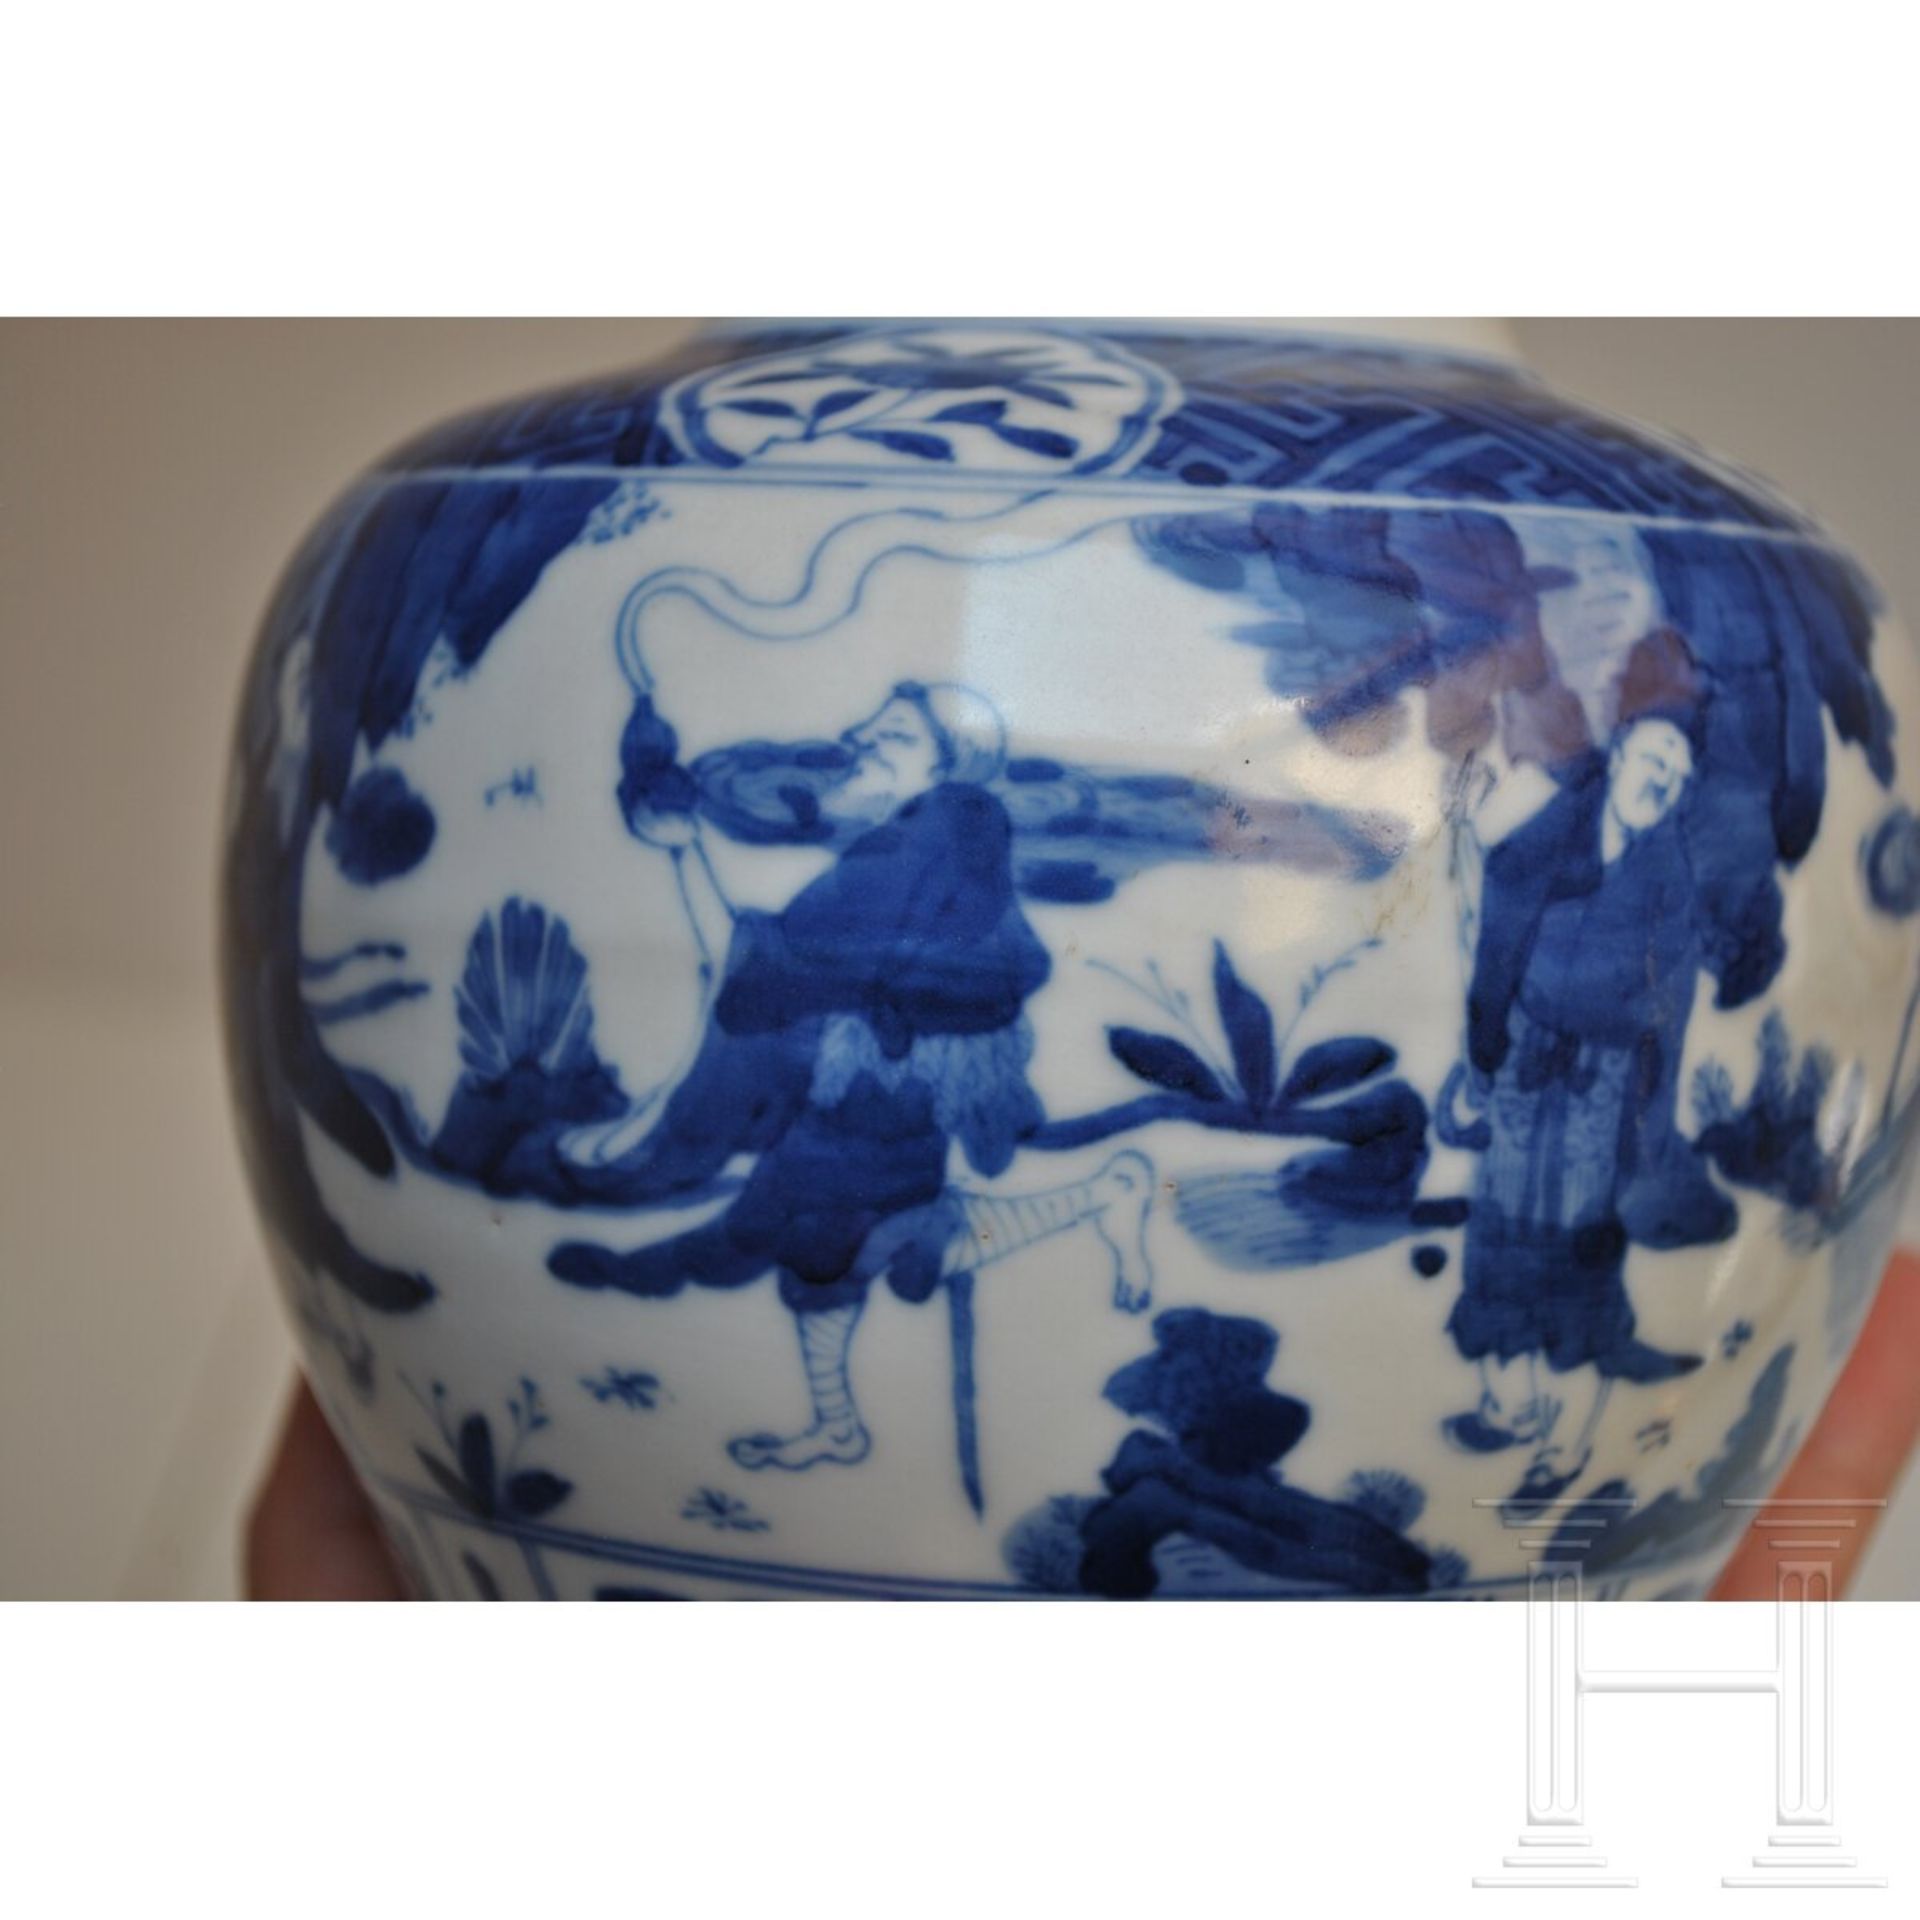 Blau-weiße Vase mit figürlicher Szene mit Wanli-Sechszeichenmarke, China, wahrscheinlich aus dieser - Image 13 of 18